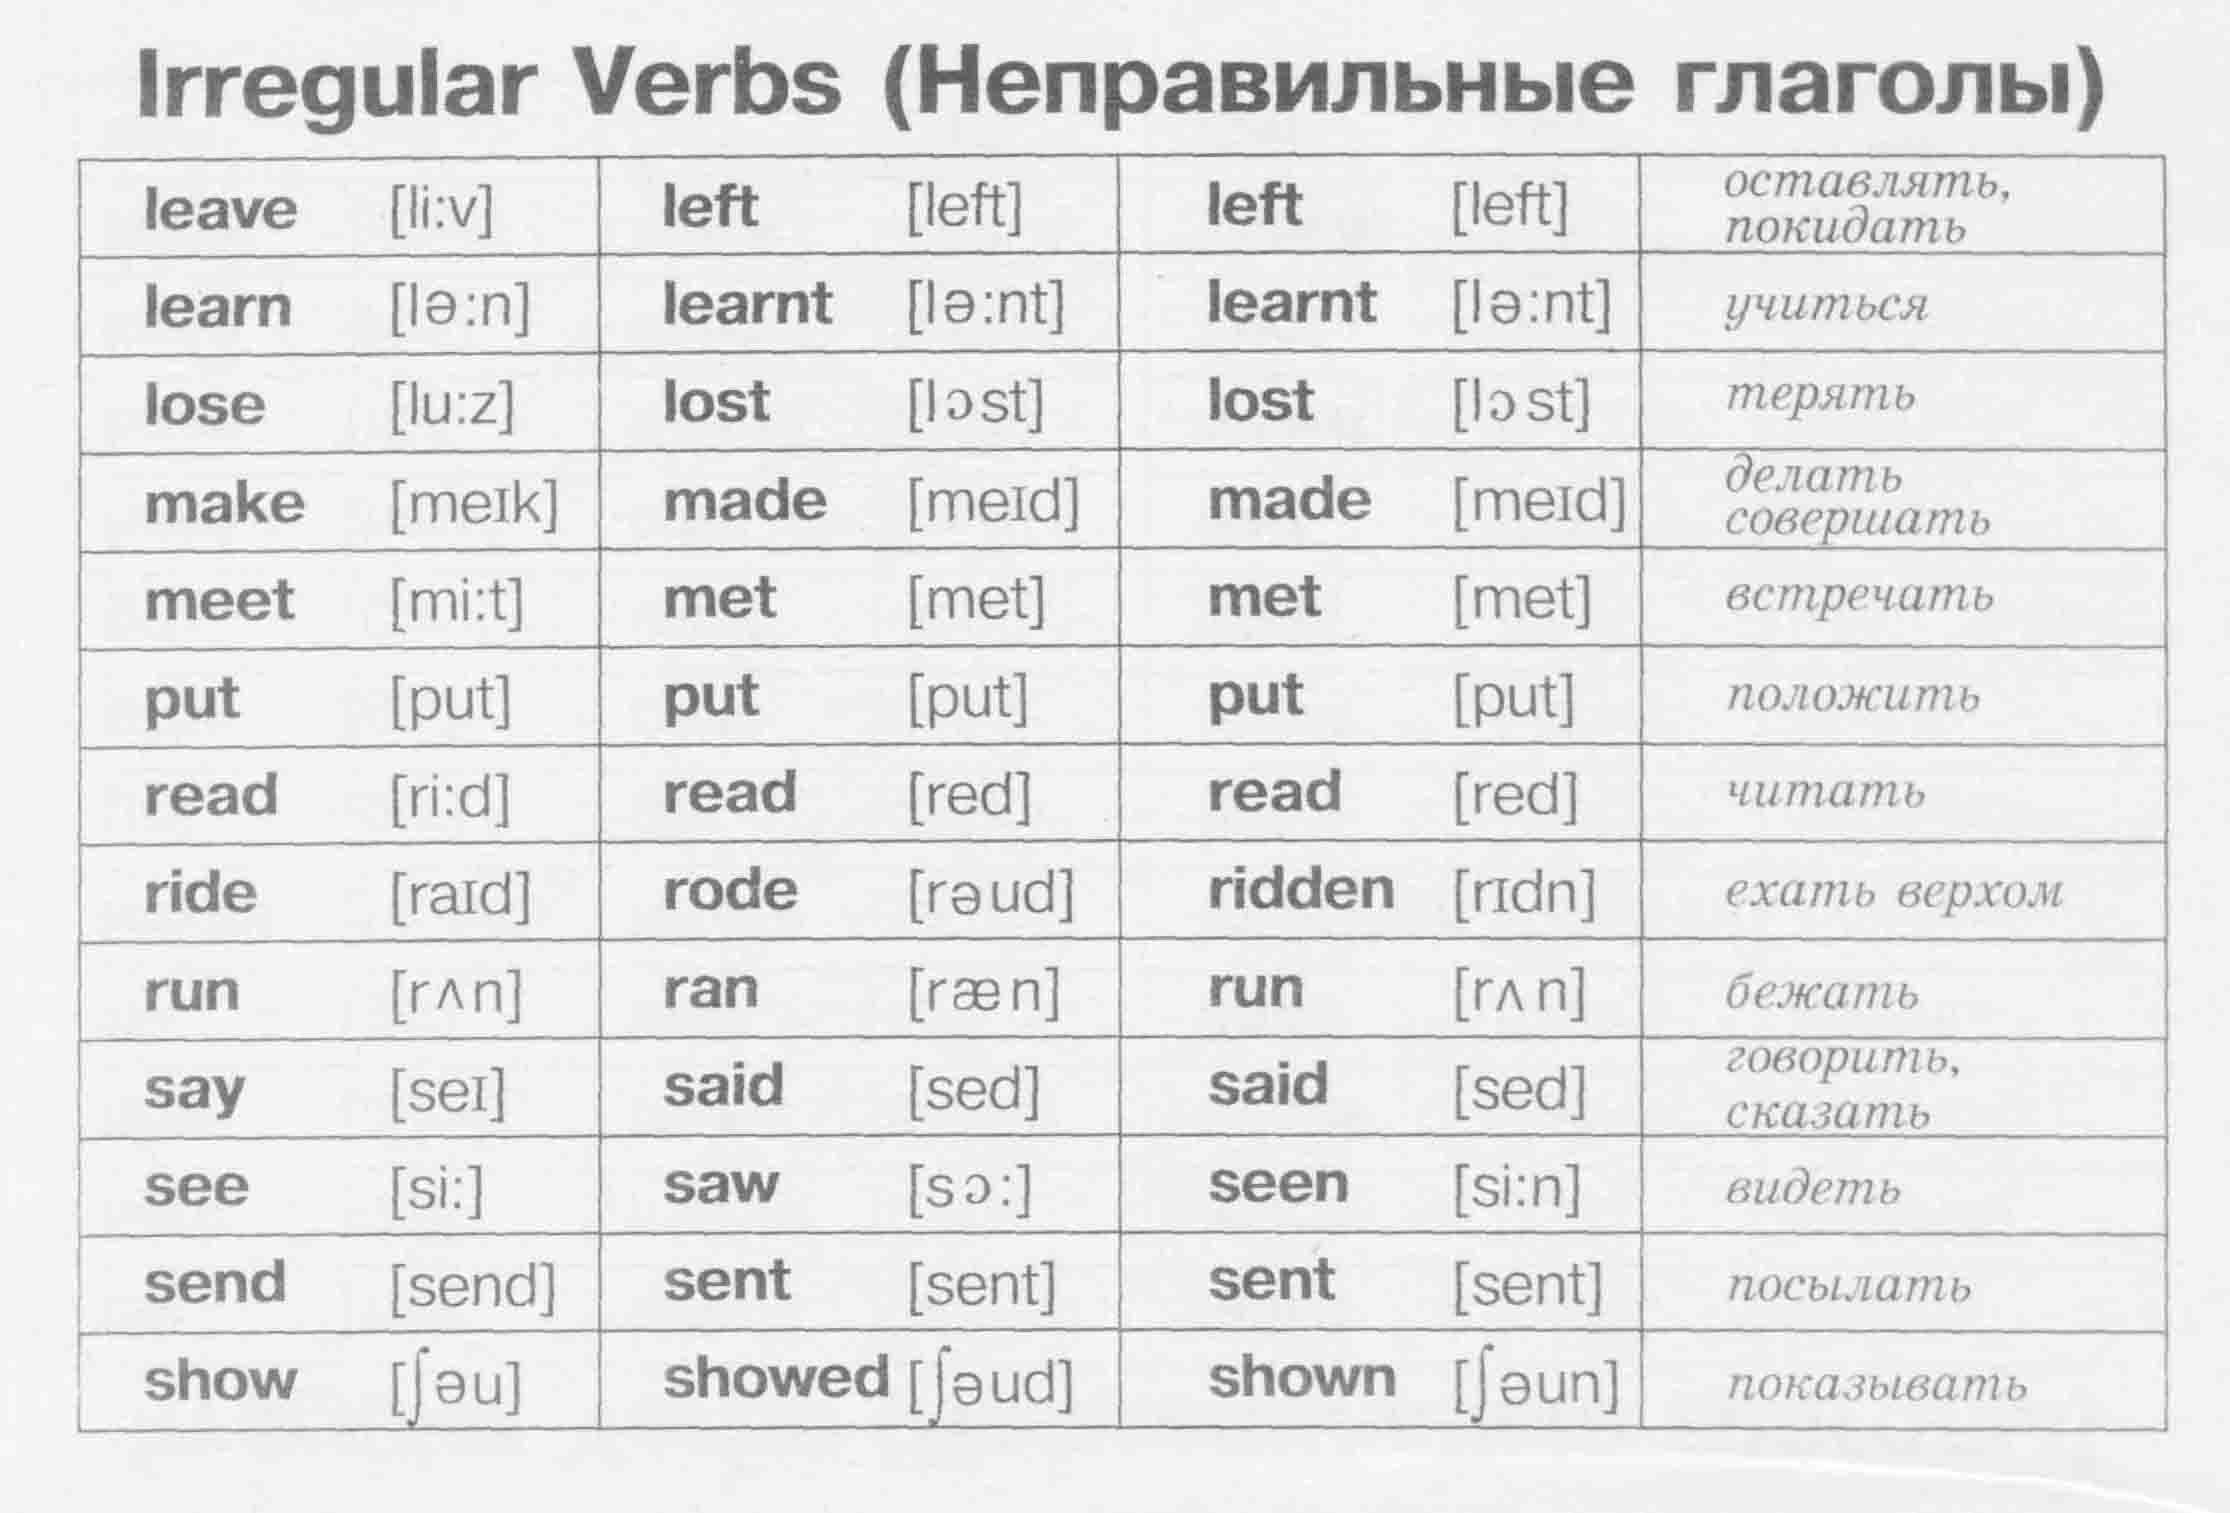 Английские глаголы неправильной формы с переводом